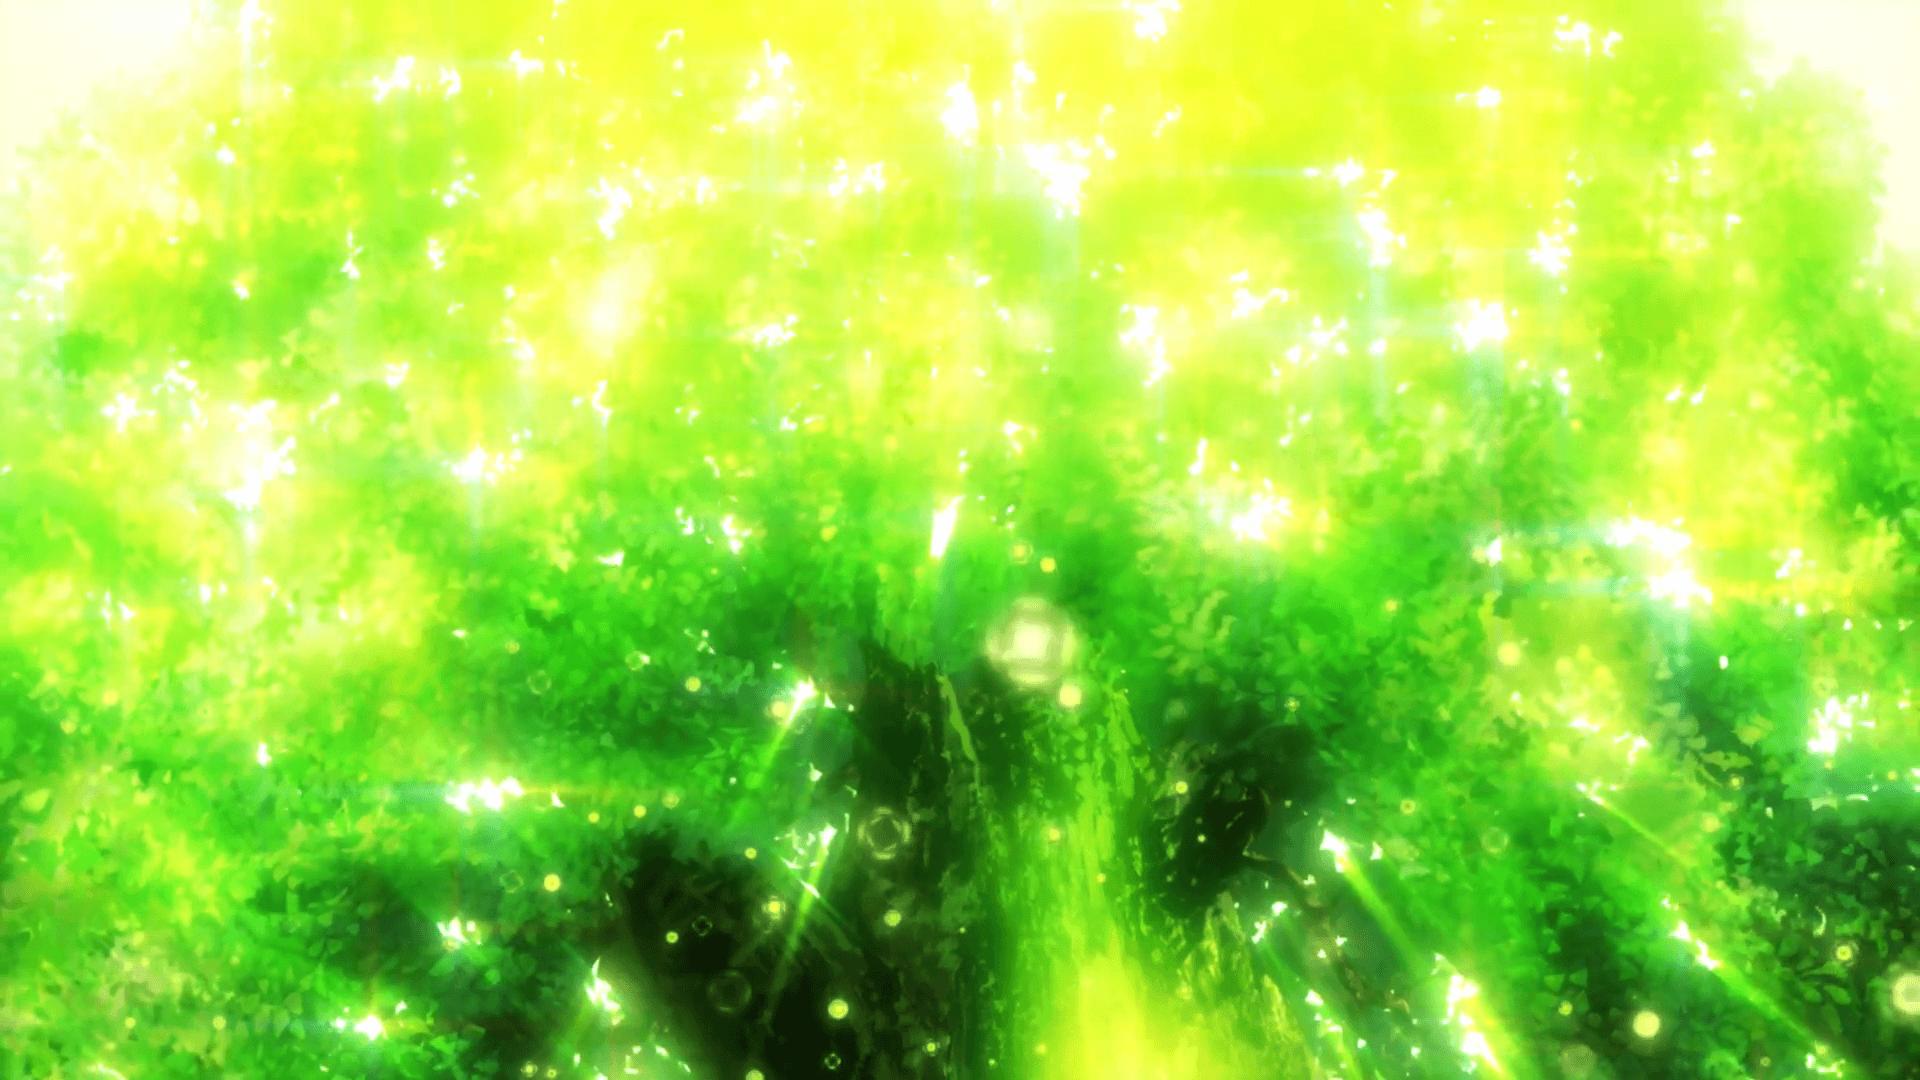 Natsume Yuujinchou Roku High Resolution Desktop Wallpaper, Natsume Yuujinchou Roku, Anime